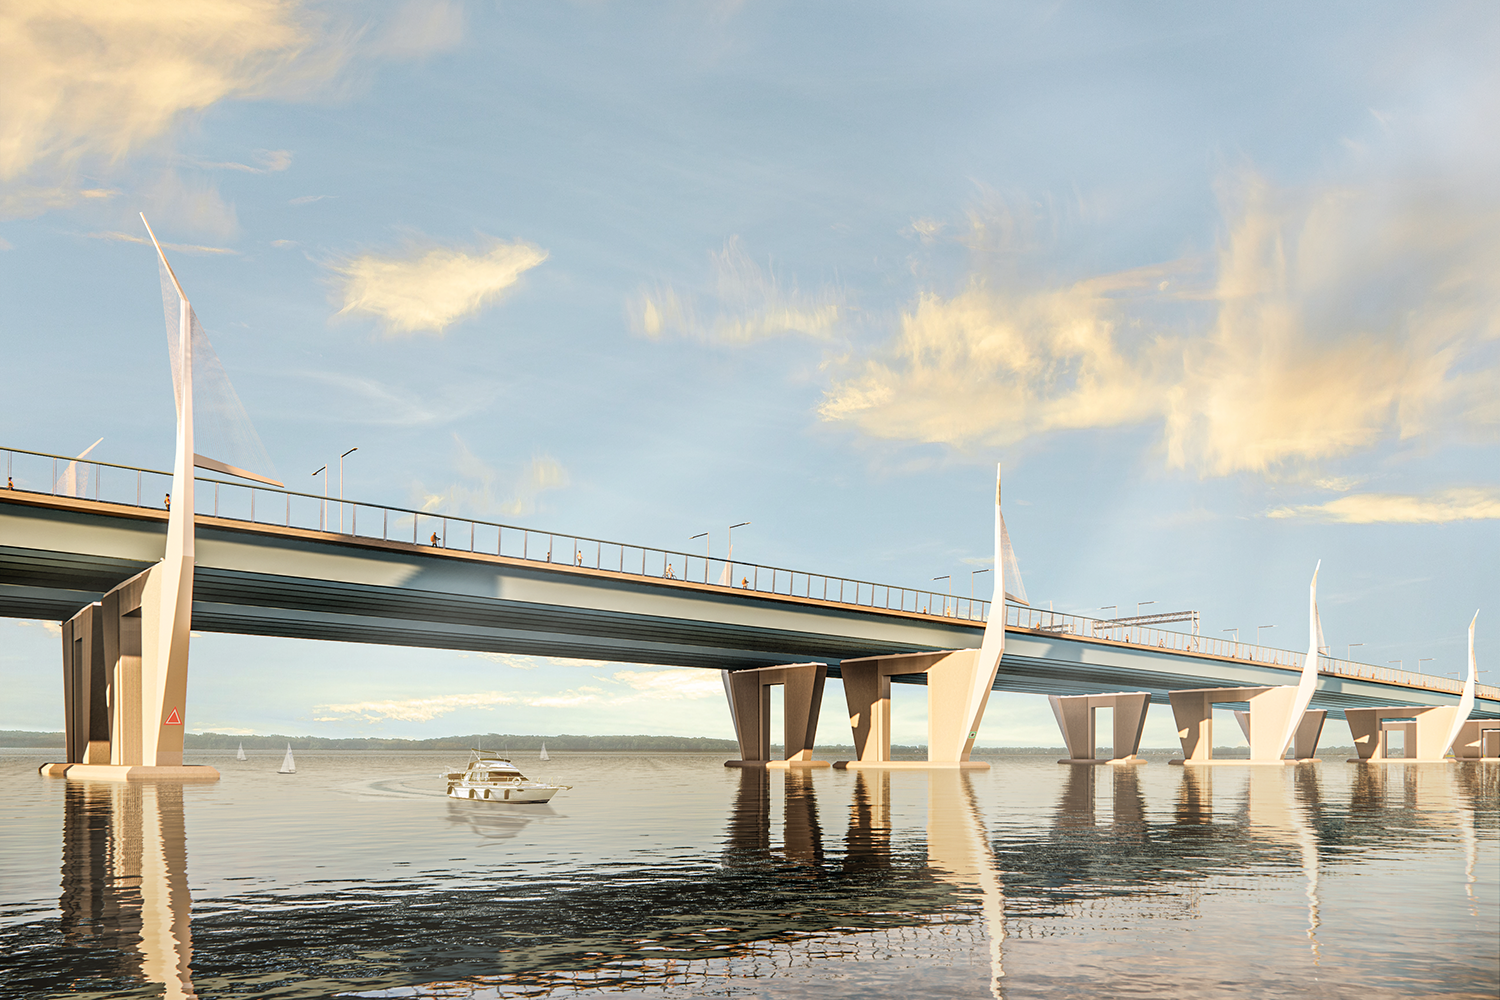 Construction begins on new Île-aux-Tourtes bridge, transport ministry confirms